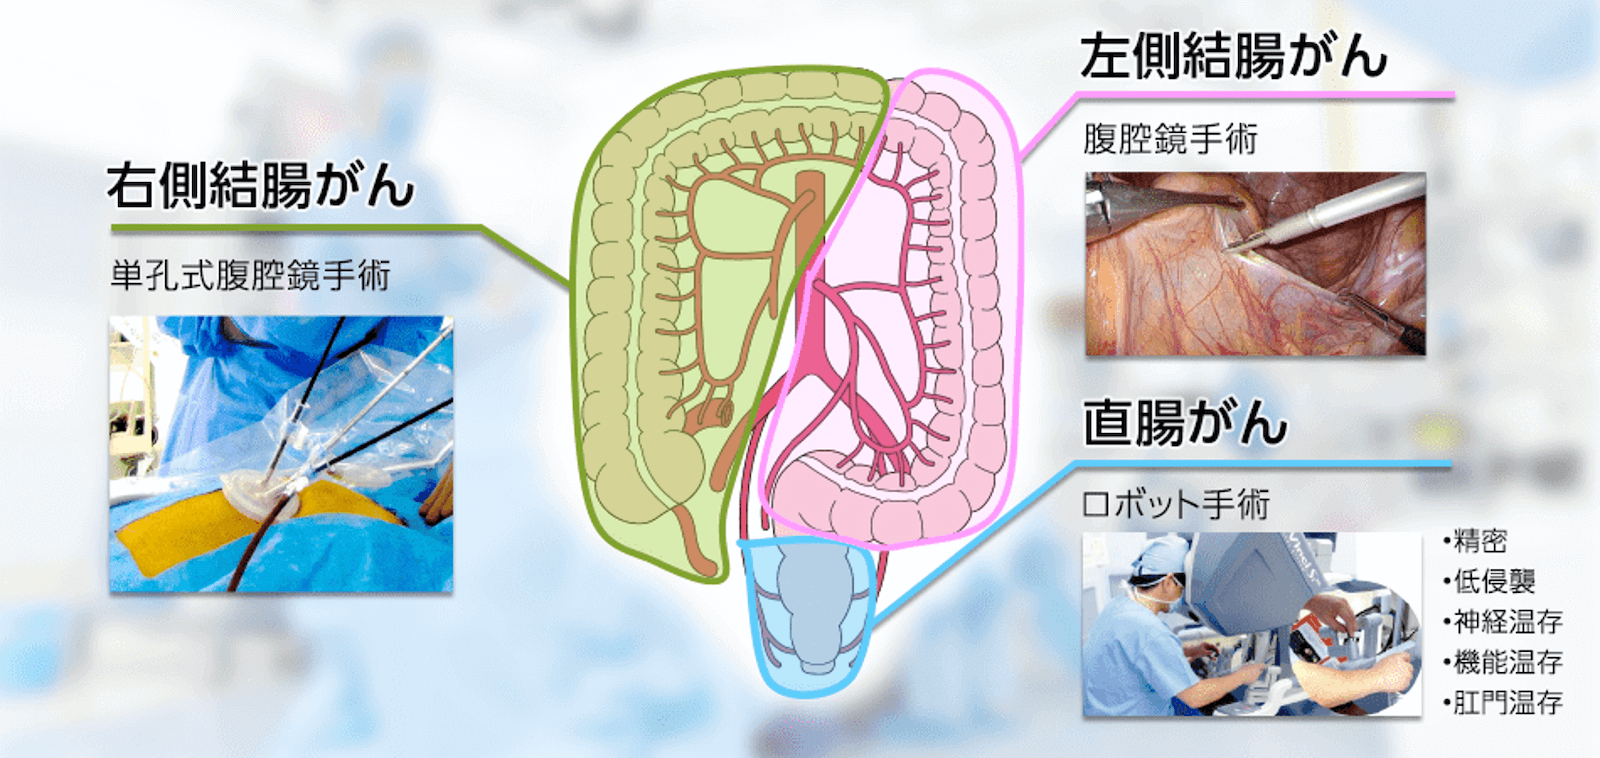 大腸がん手術の術式の種類